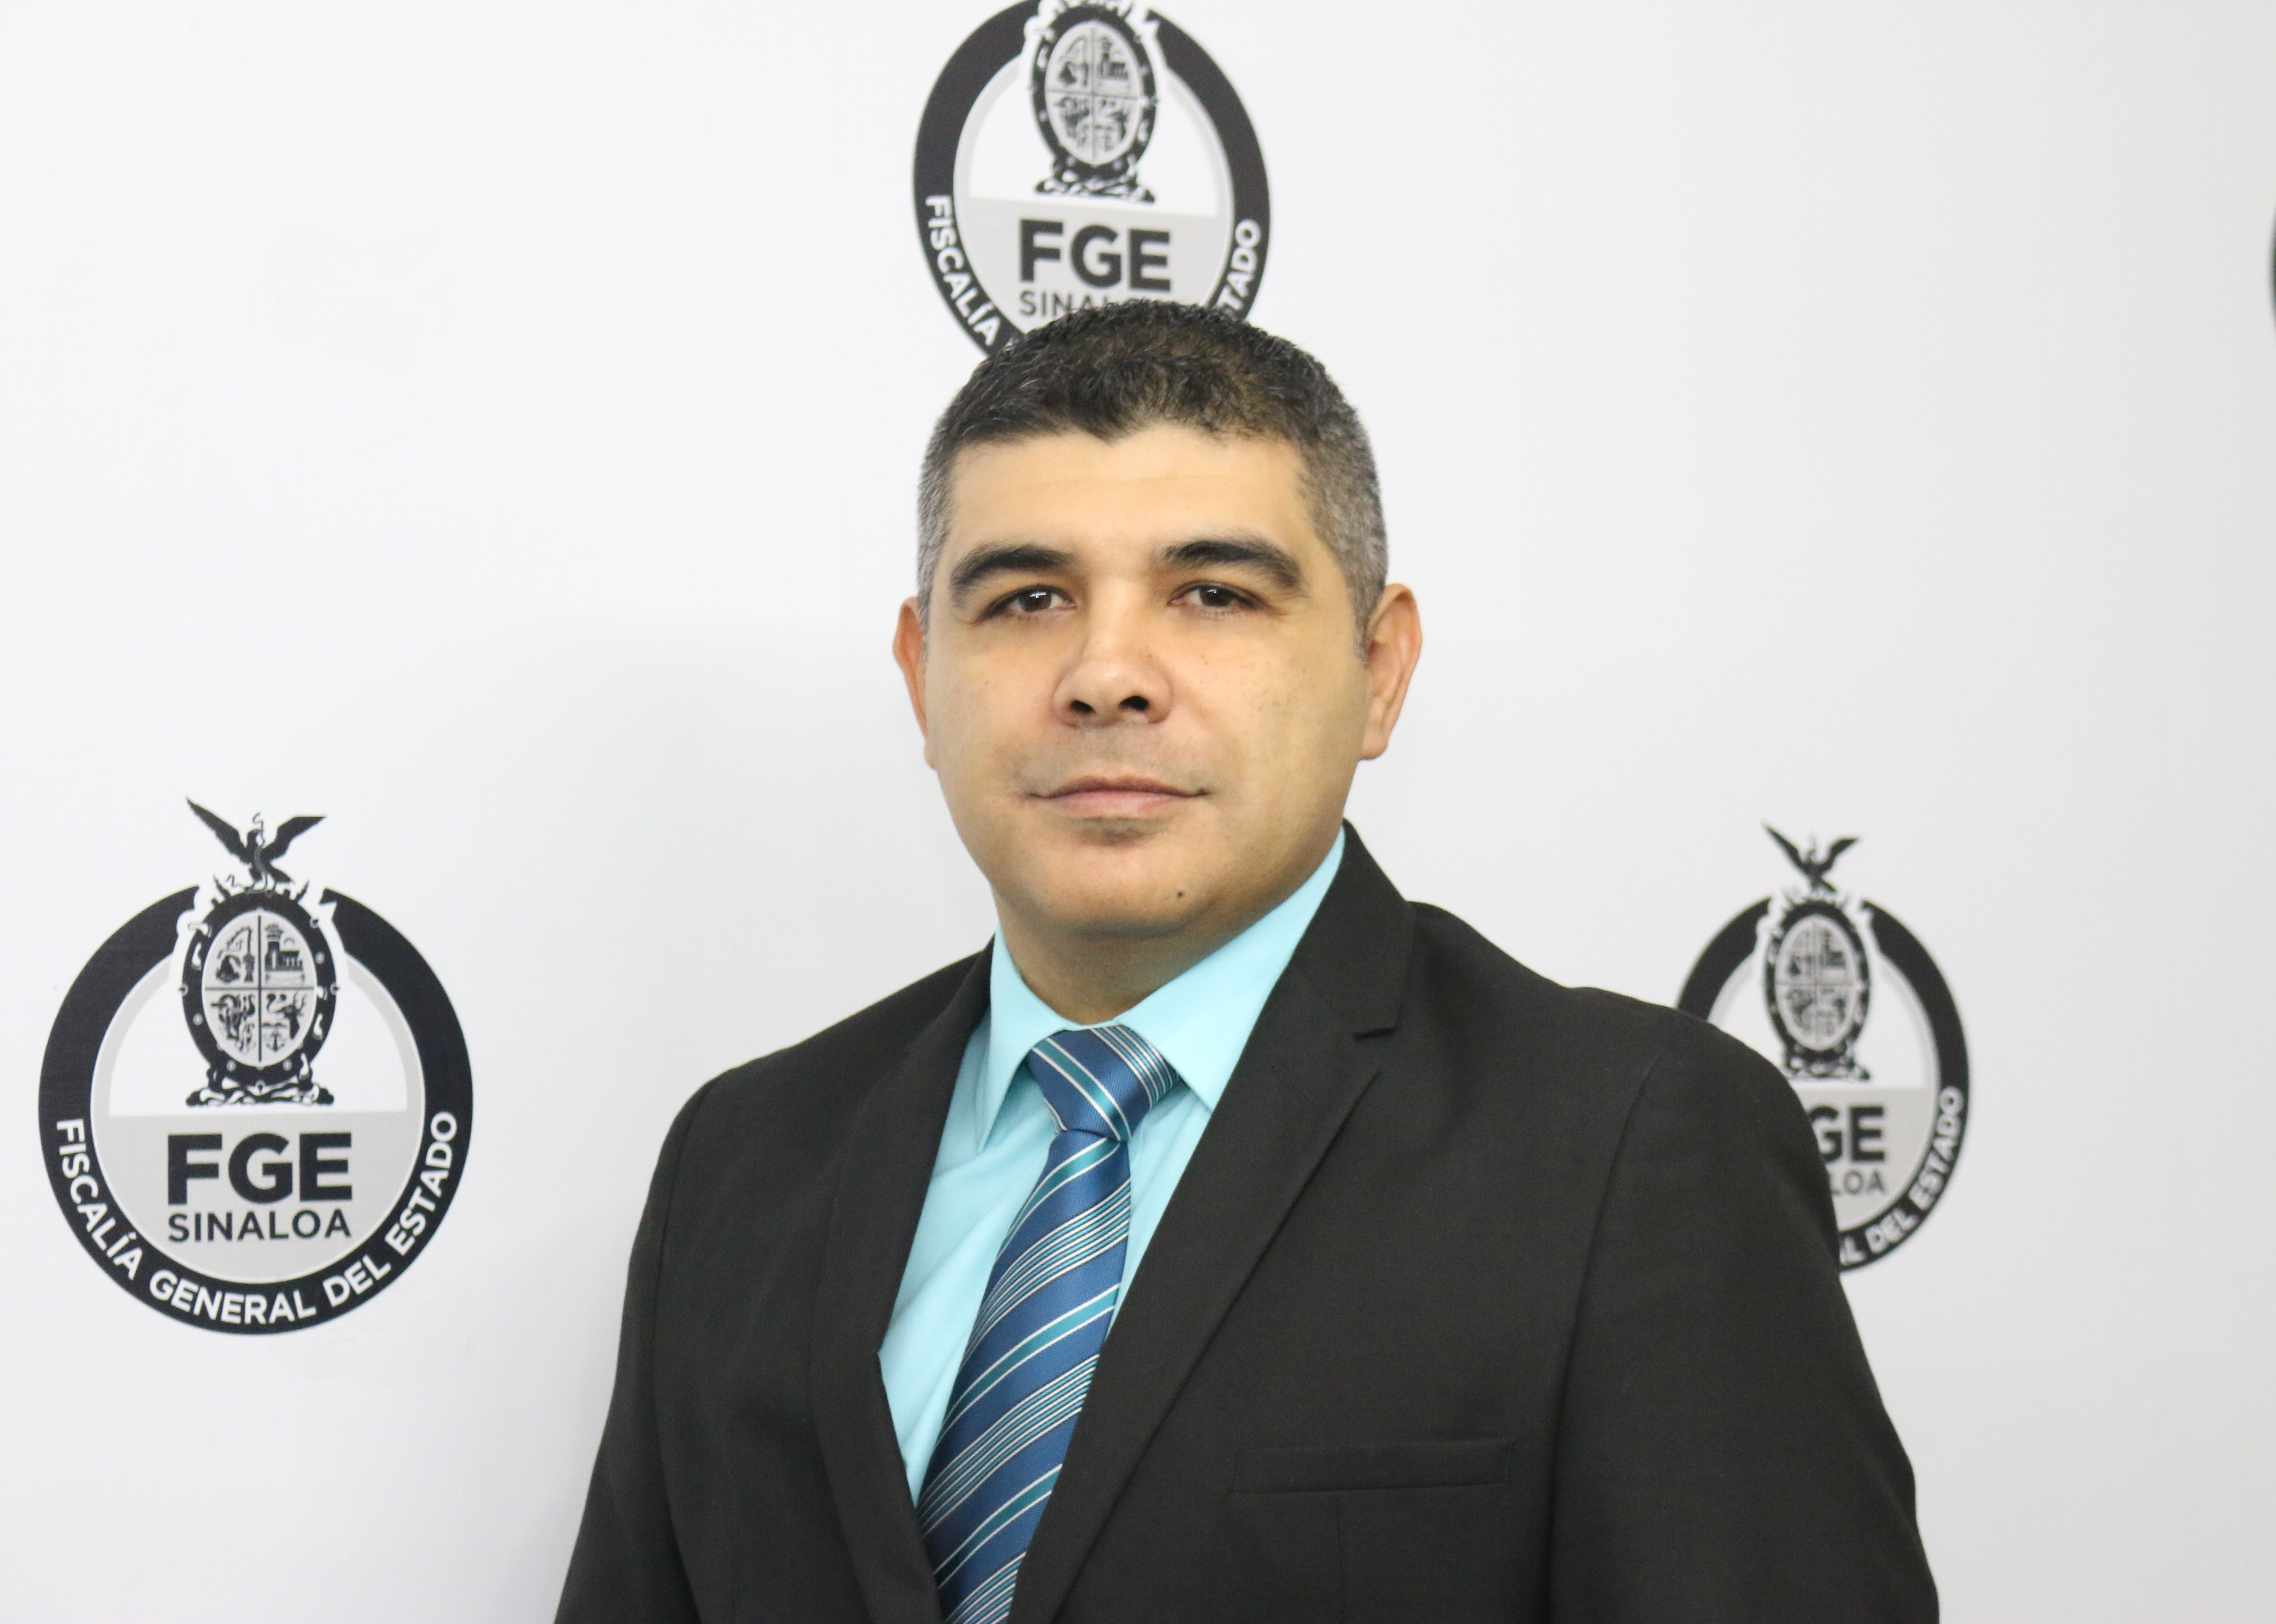 Alberto Jorge Contreras Nuñez - Comisario General de la Policía de Investigación